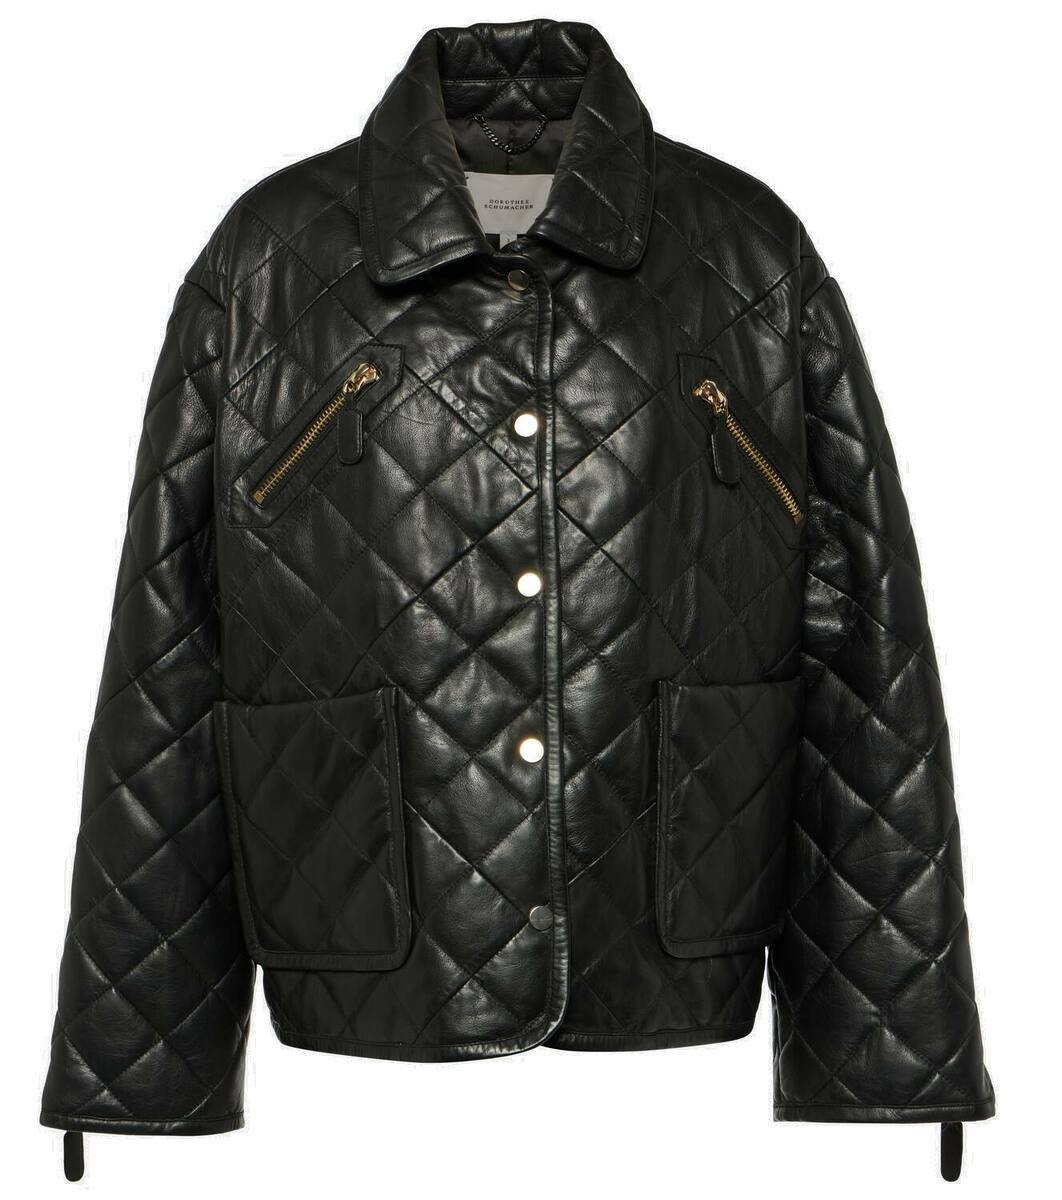 Dorothee Schumacher Sleek Statement leather jacket Dorothee Schumacher